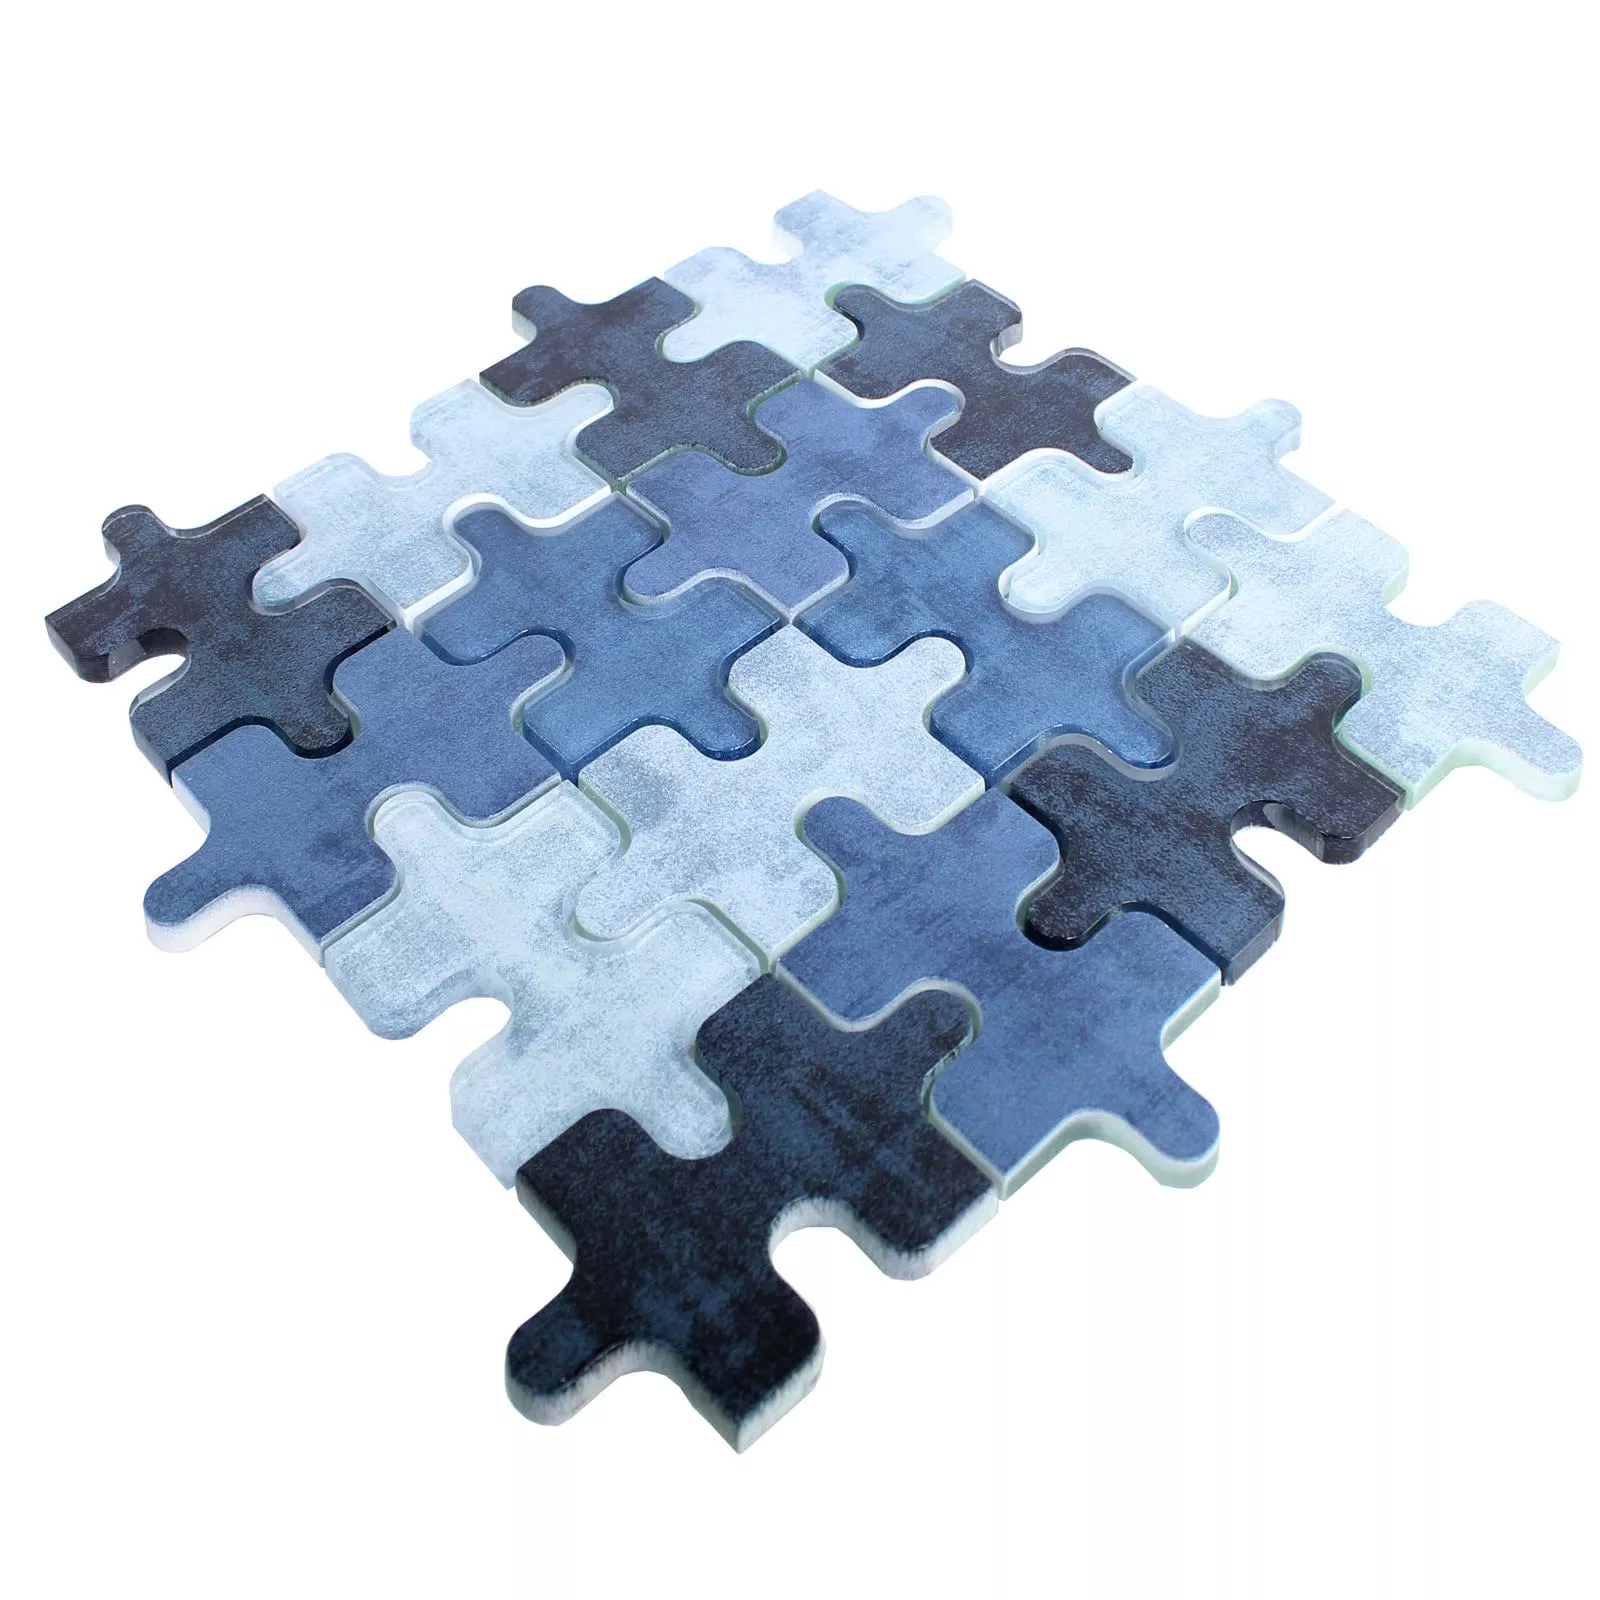 Sample Glasmozaïek Tegels Puzzle Blauw